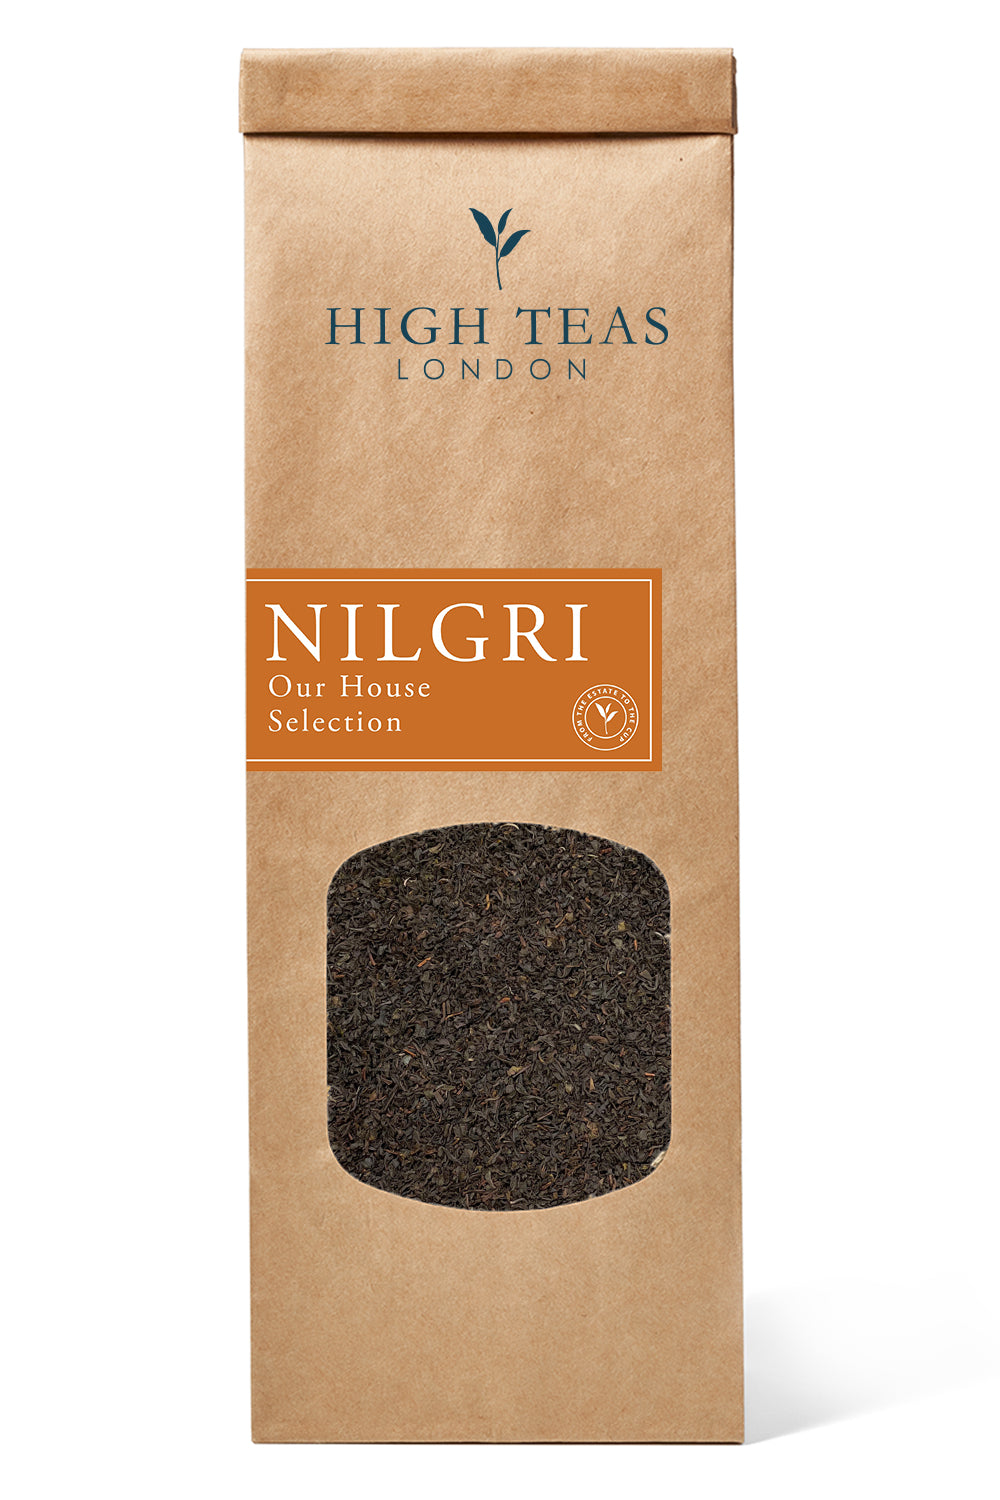 Nilgiri "Blue Mountain" SFTGFOP1 - Our House Selection-50g-Loose Leaf Tea-High Teas